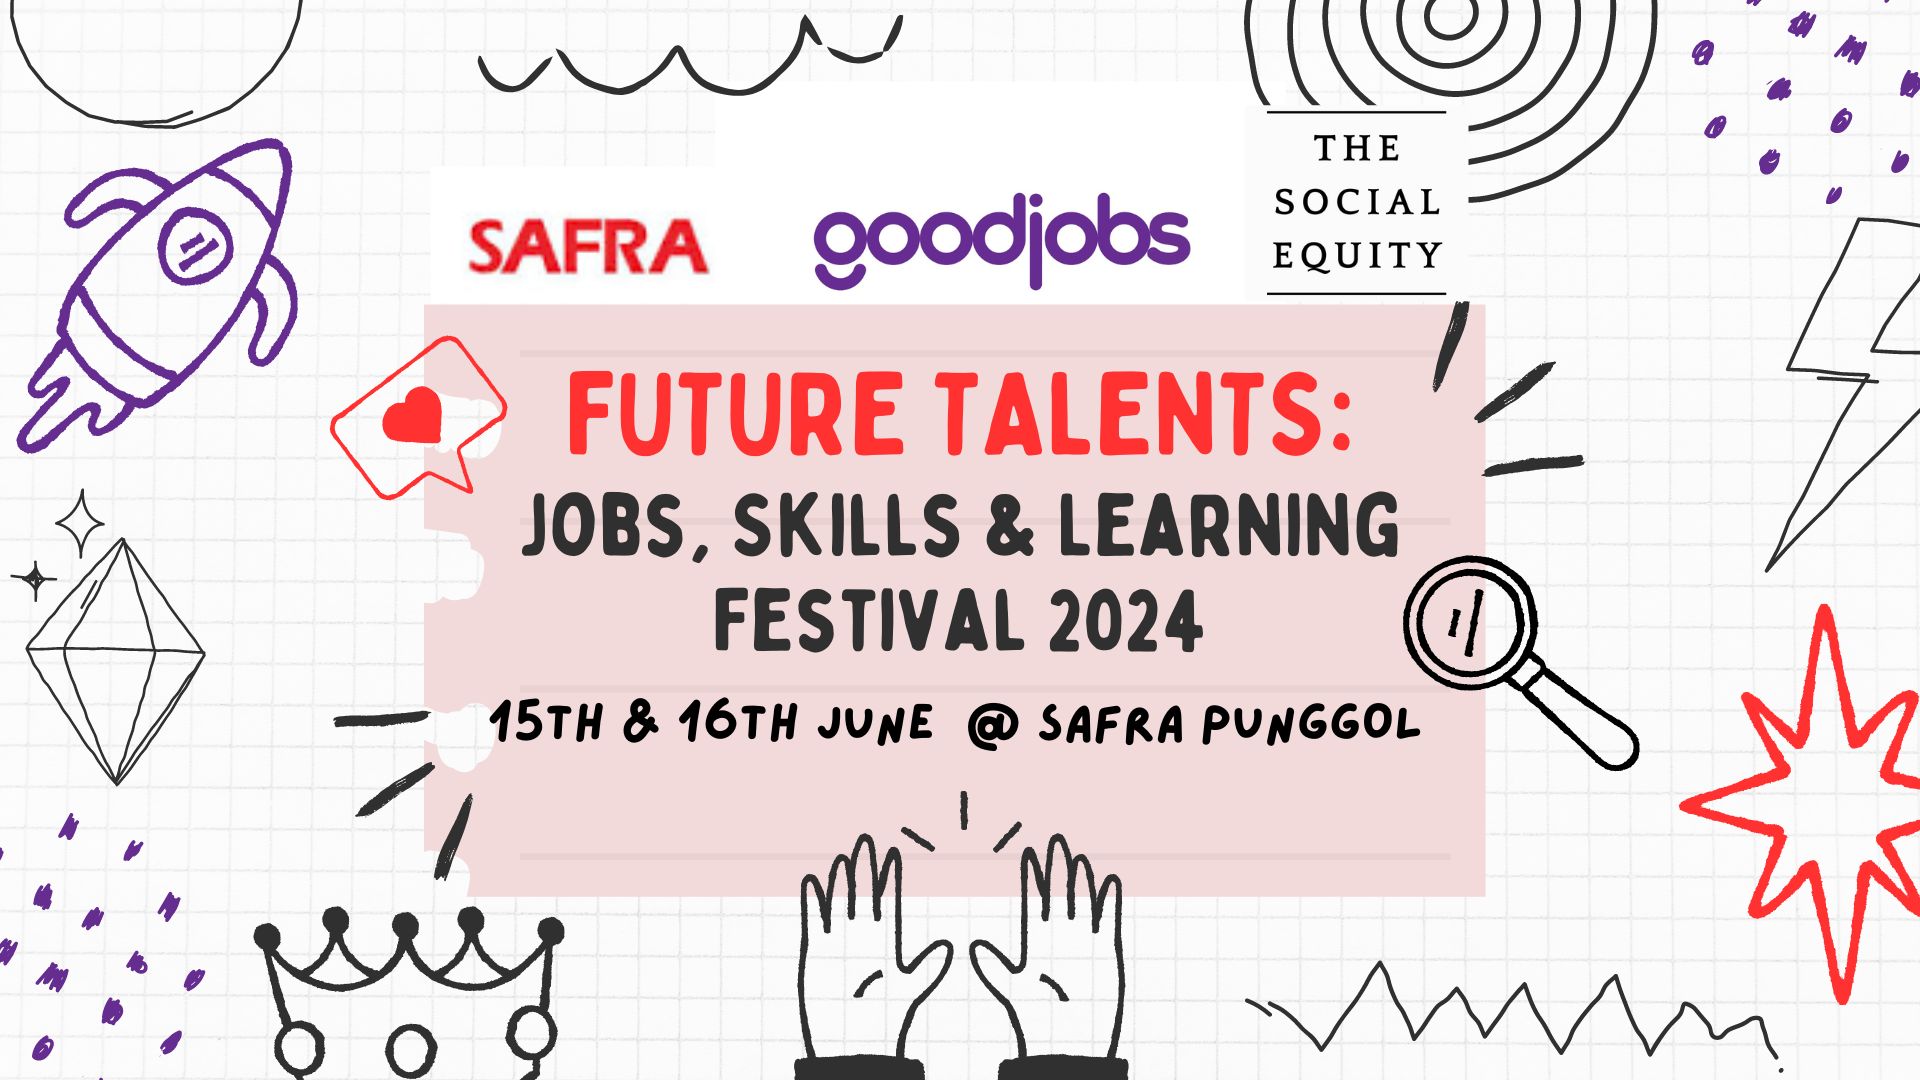 FUTURE TALENTS: JOBS, SKILLS & LEARNING FESTIVAL 2024